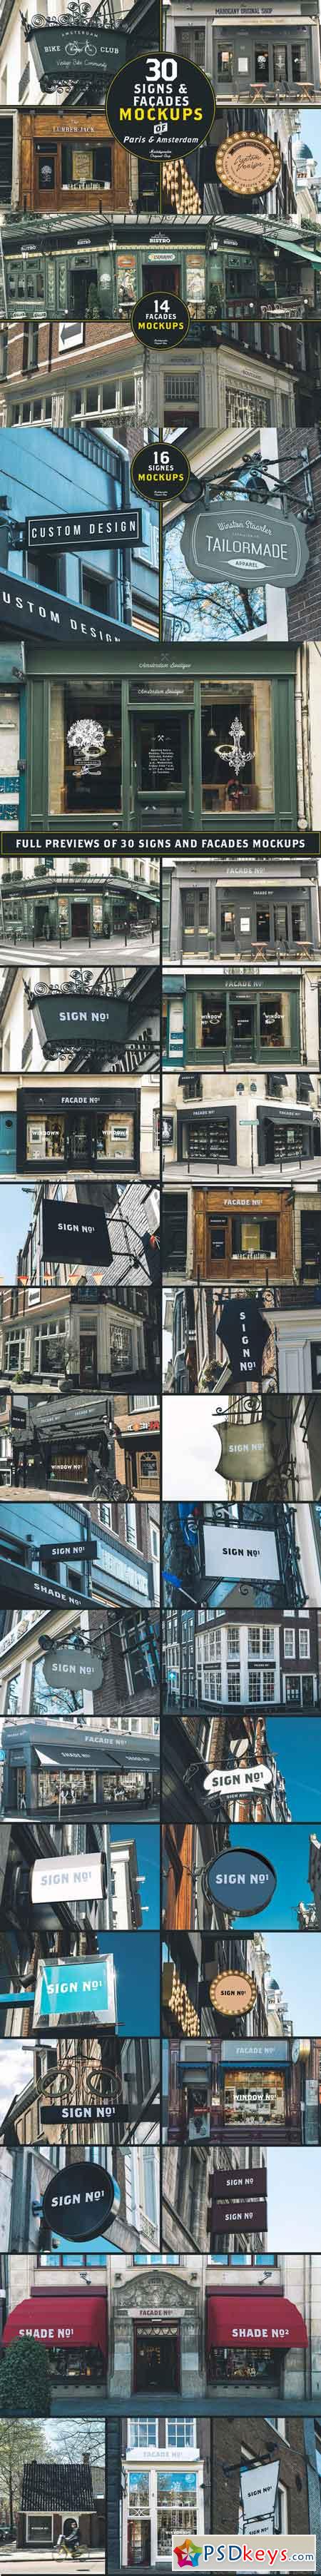 30 Signs & Facades - Paris Amsterdam 736172